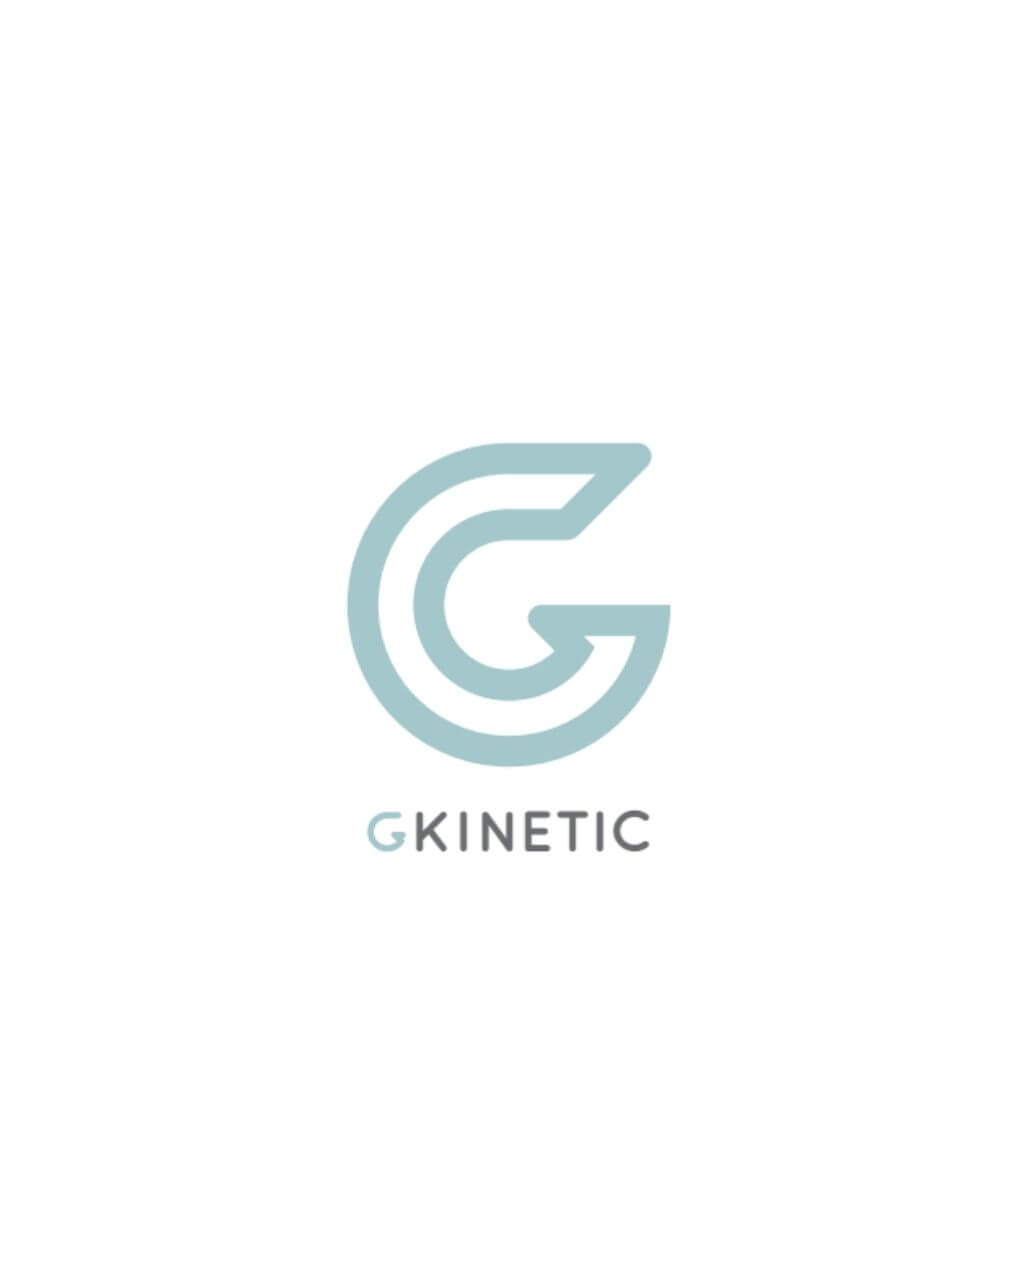 GKinetic